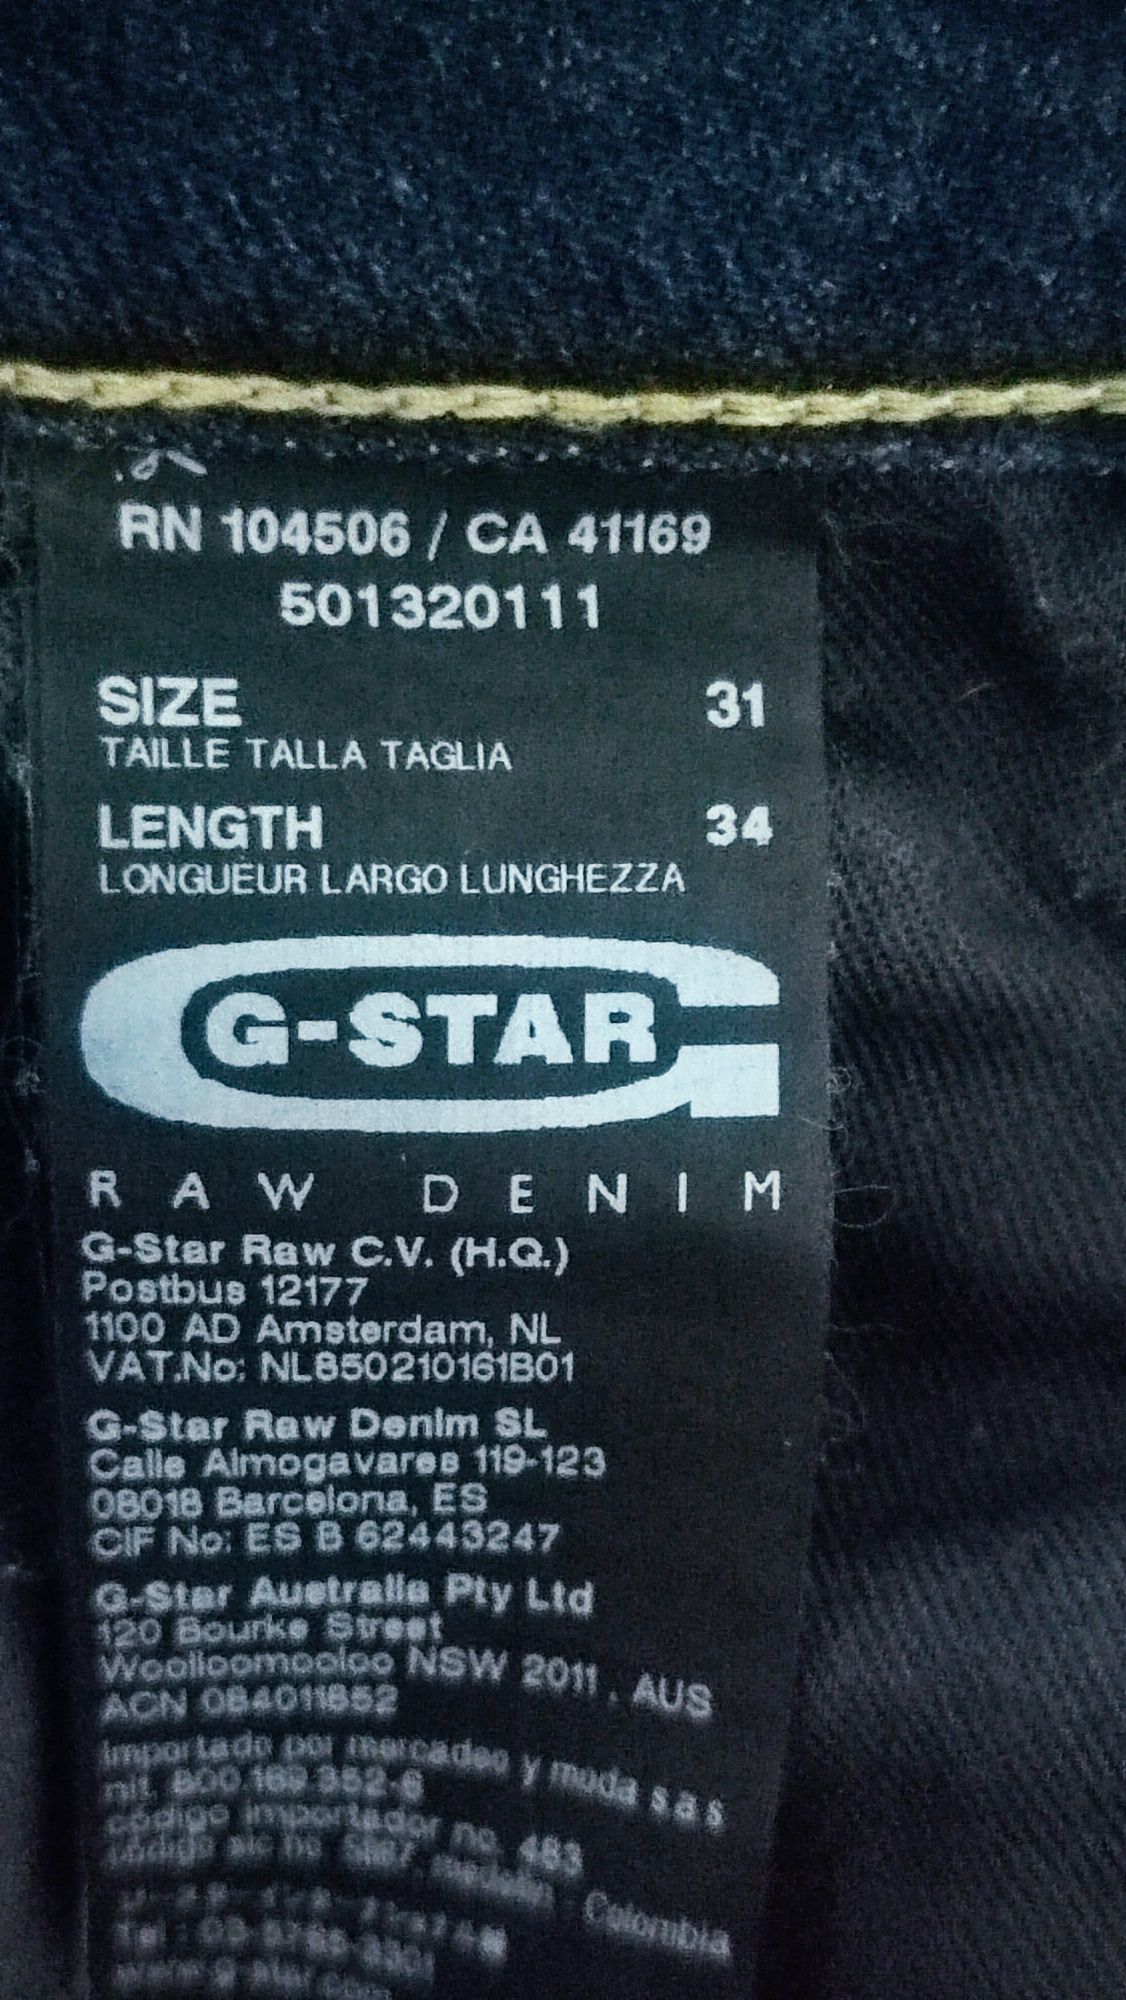 G-STAR RAW Type C 3D Loose Tapered blugi bărbați , mărimea W31, L34.